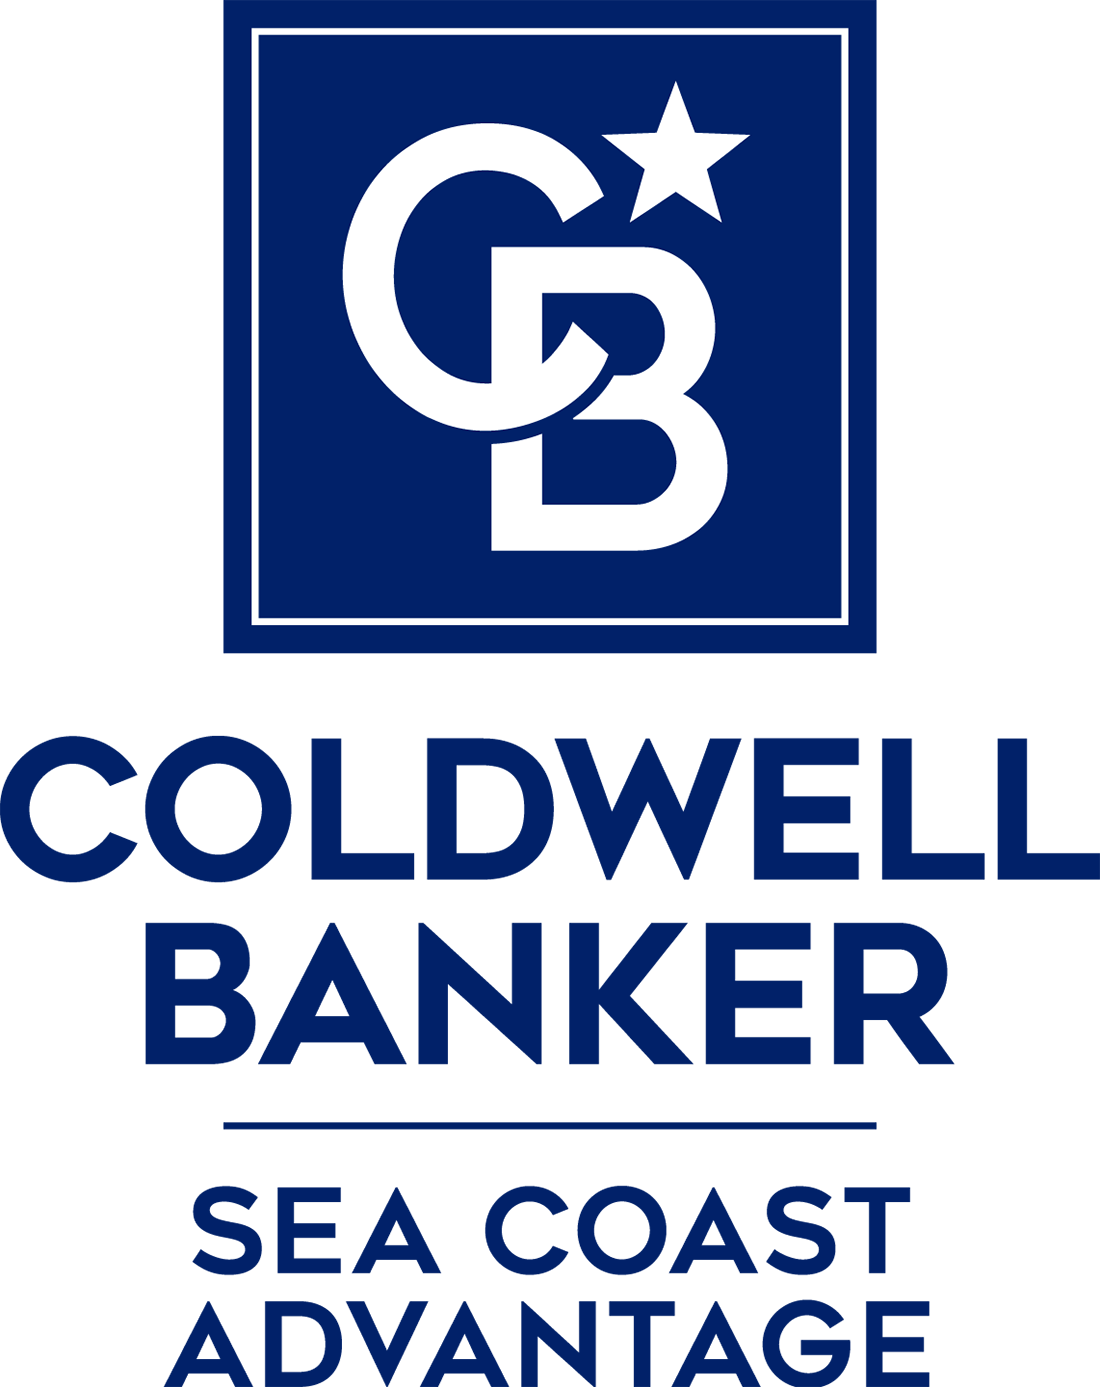 Dean Nikodemski - Coldwell Banker Chicora Advantage Logo